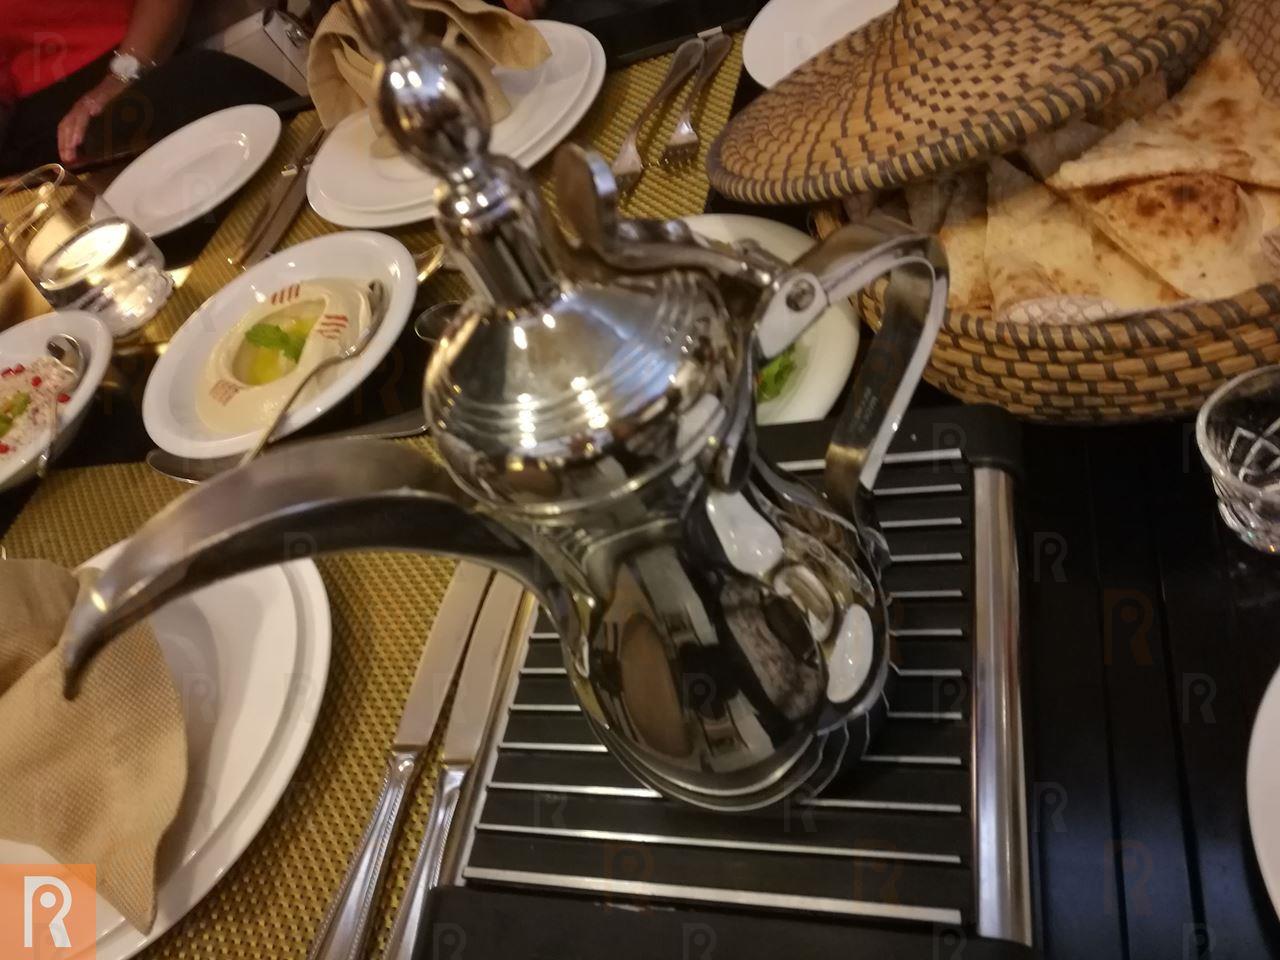 عشاء كويتي في مطعم الروشنة في فندق سفير الفنطاس